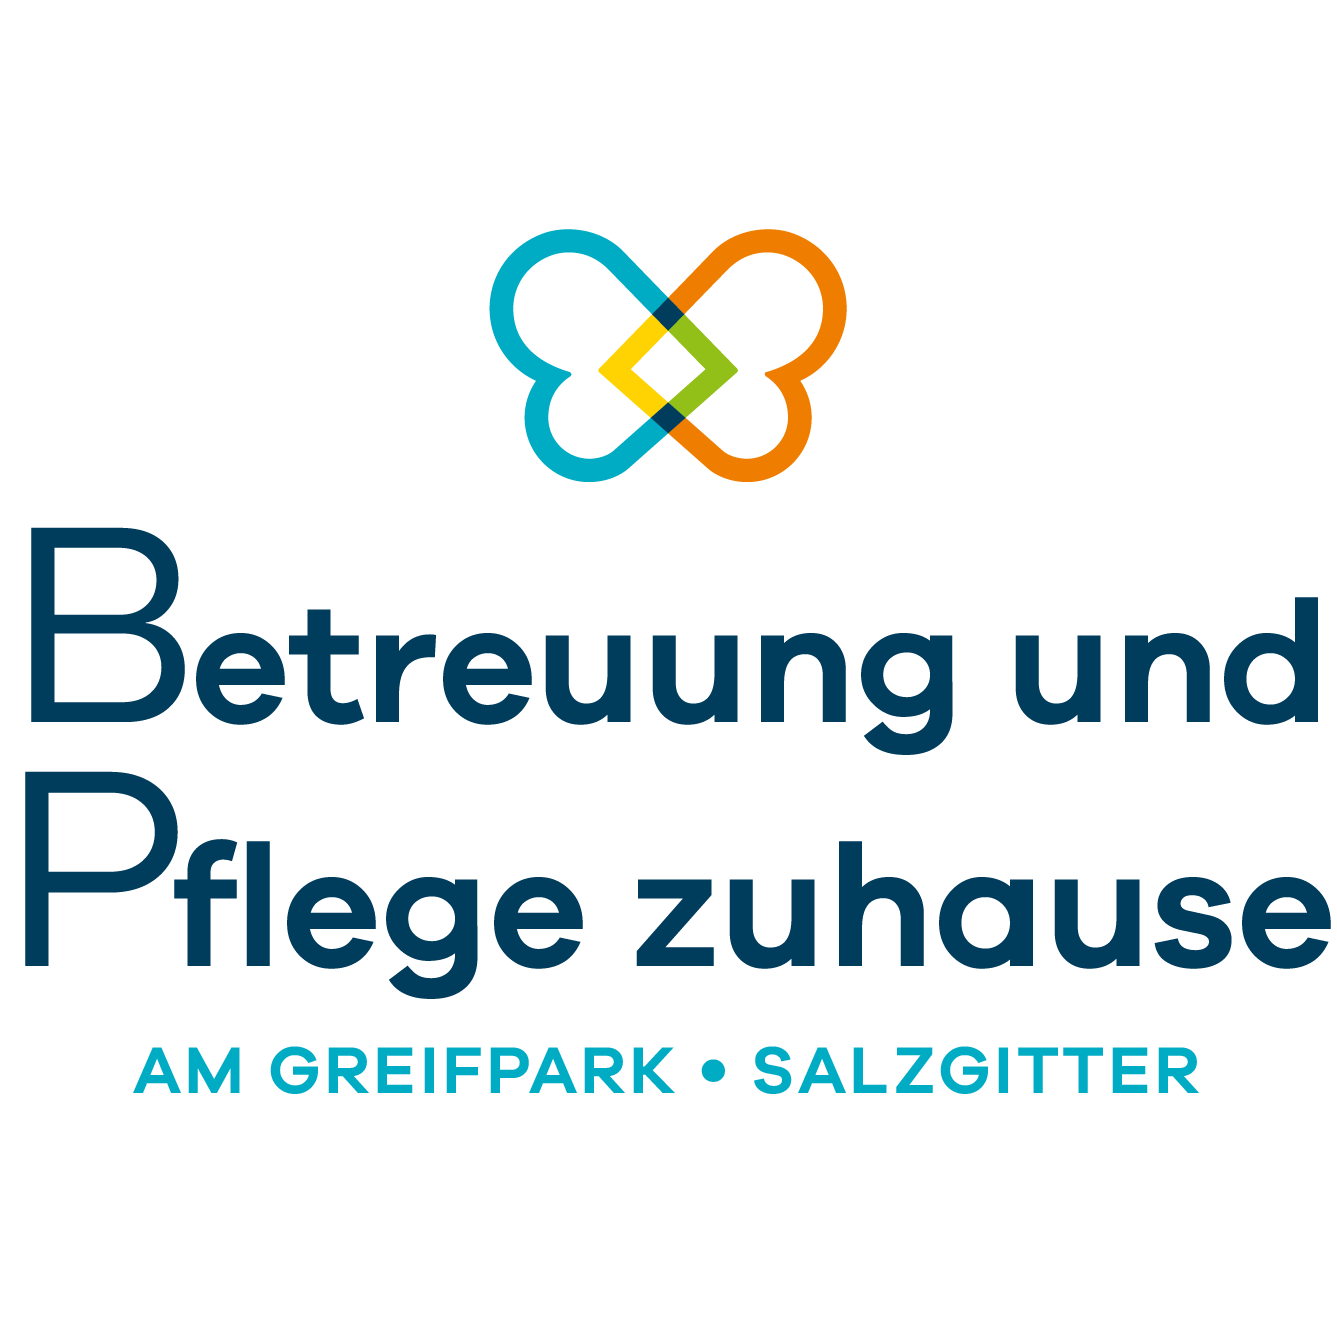 Betreuung und Pflege zuhause am Greifpark Logo